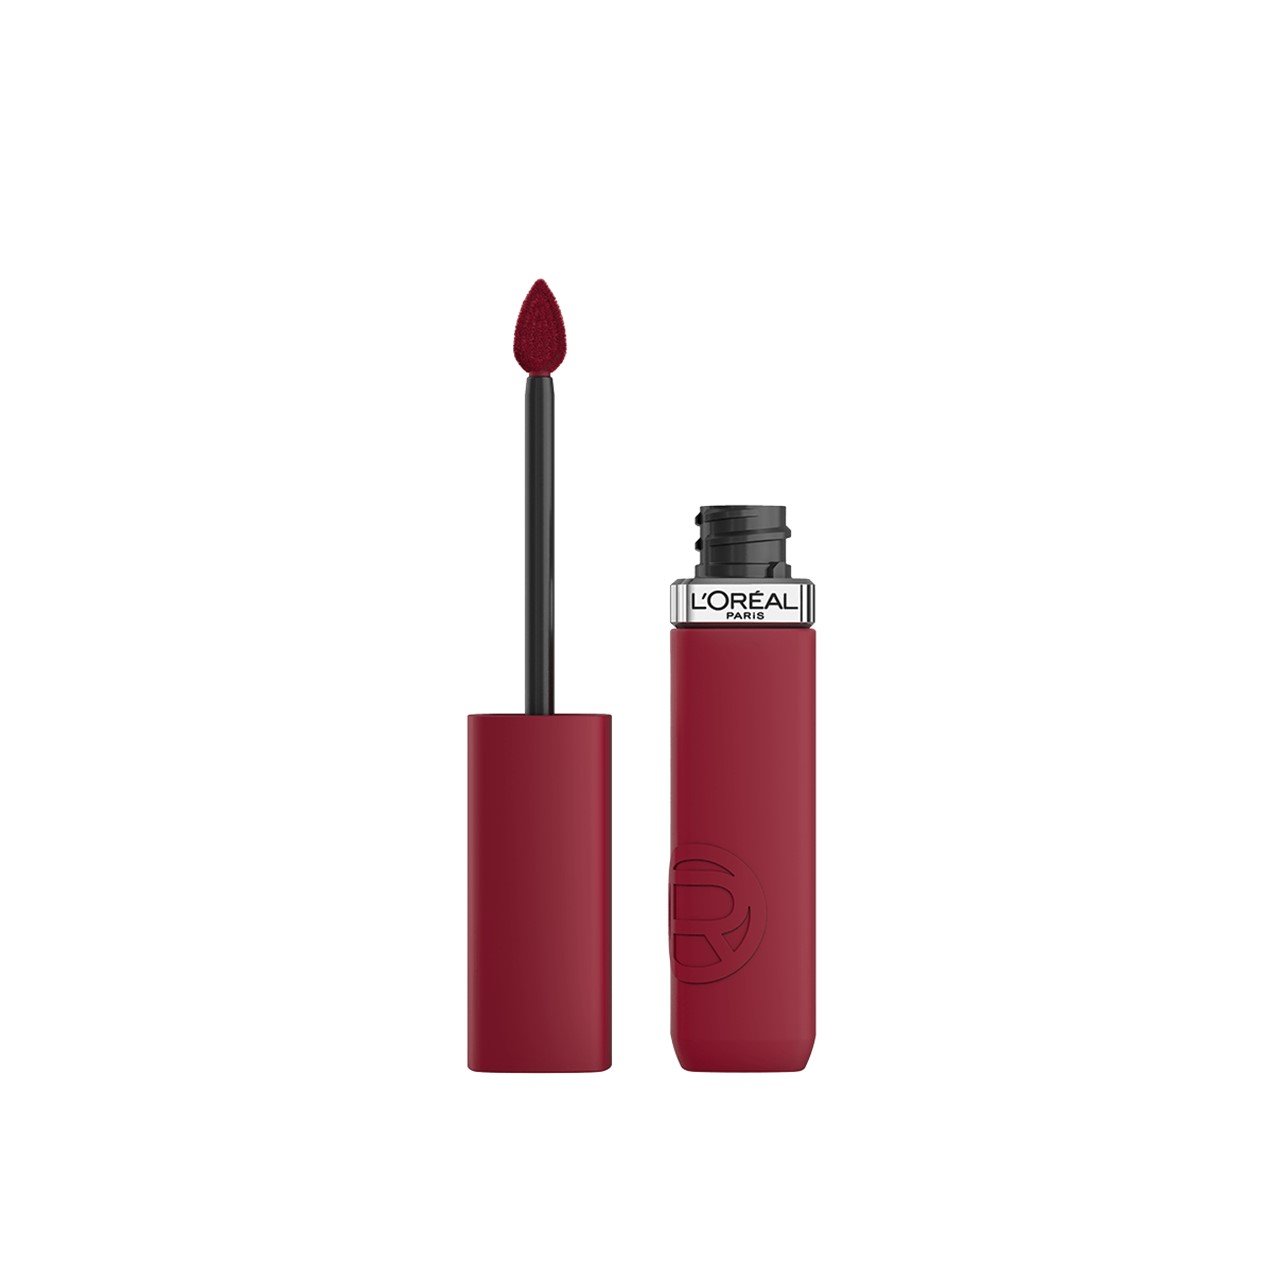 L'Oréal Paris Infallible Matte Resistance Liquid Lipstick 500 Wine Not 5ml